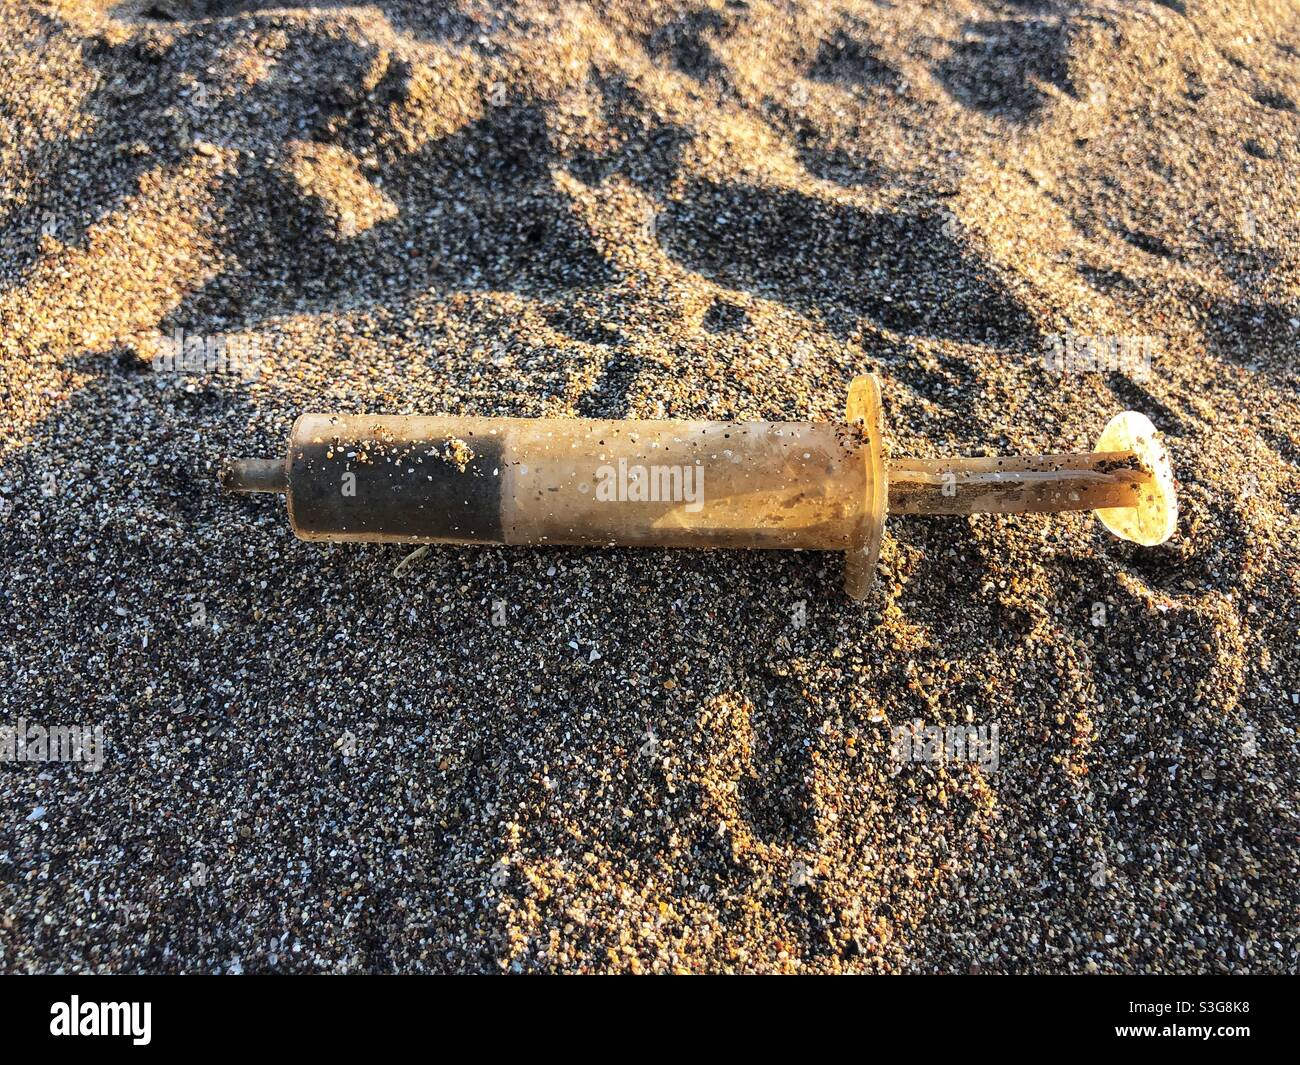 Old rusty syringe on sand Stock Photo